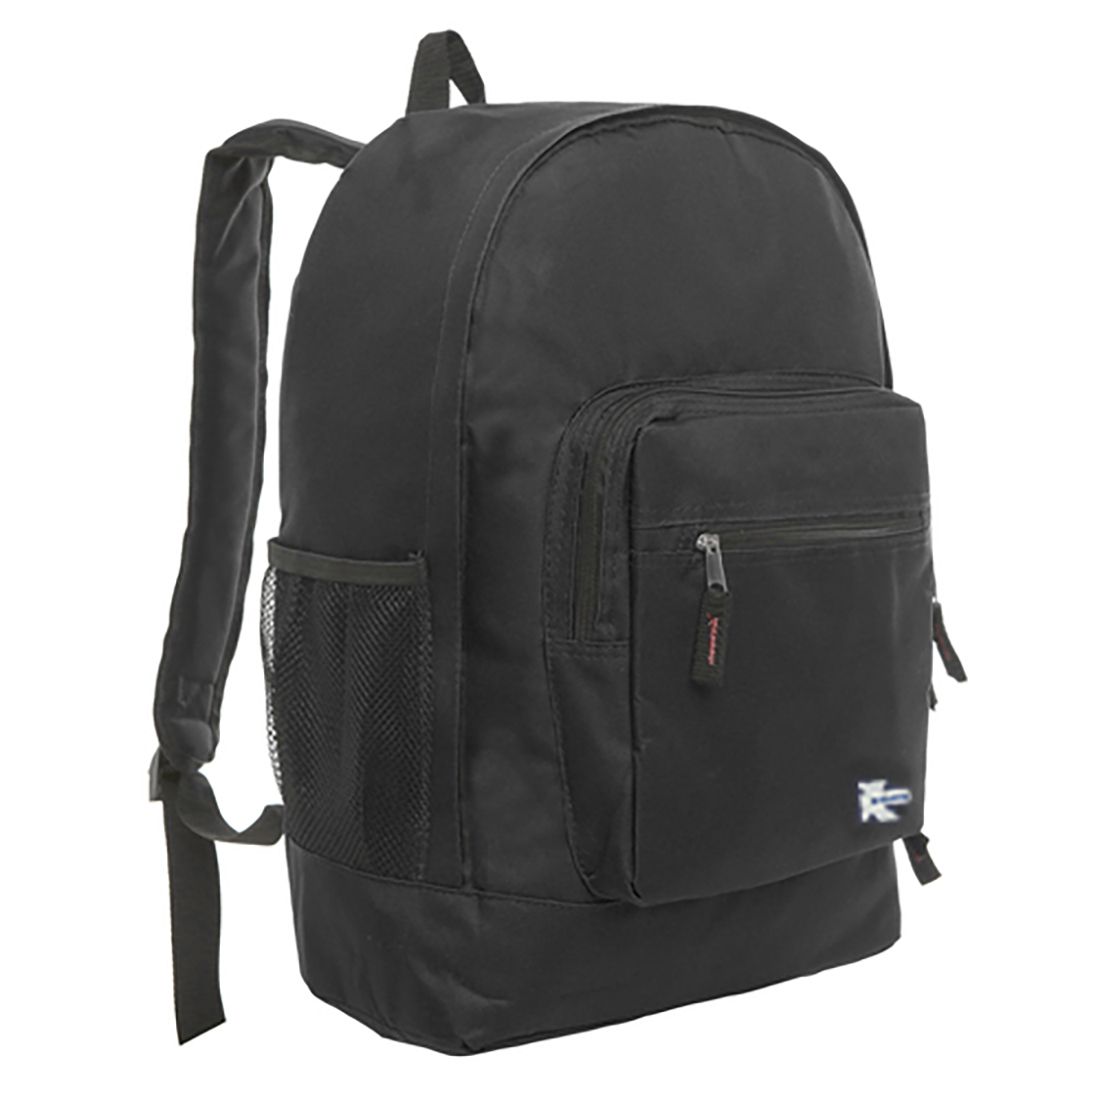 K-Cliffs Large Backpack for Kids-College Students , Lightweight Durable Travel Backpack Fits 15.6 Laptops Water Resistant, Unisex Adjustable Padded Shoulder Straps  (Black) - image 1 of 5